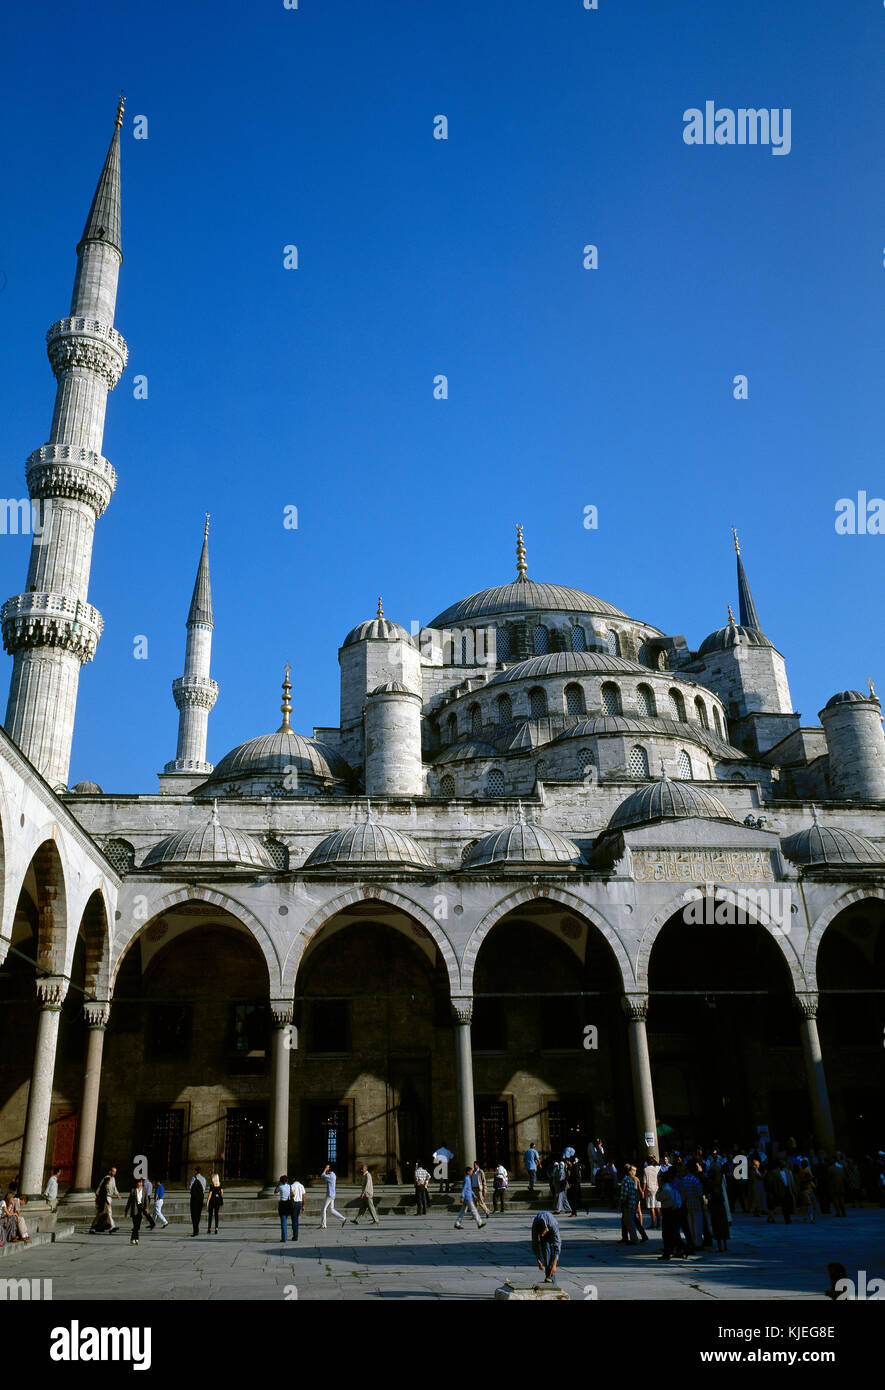 La Turchia. istanbul. moschea blu, 1609-1616 durante la regola di ahmed i. stile ottomano. architetto, sedefkar Mehmed Agha. Vista sul cortile con abluzione font. Foto Stock